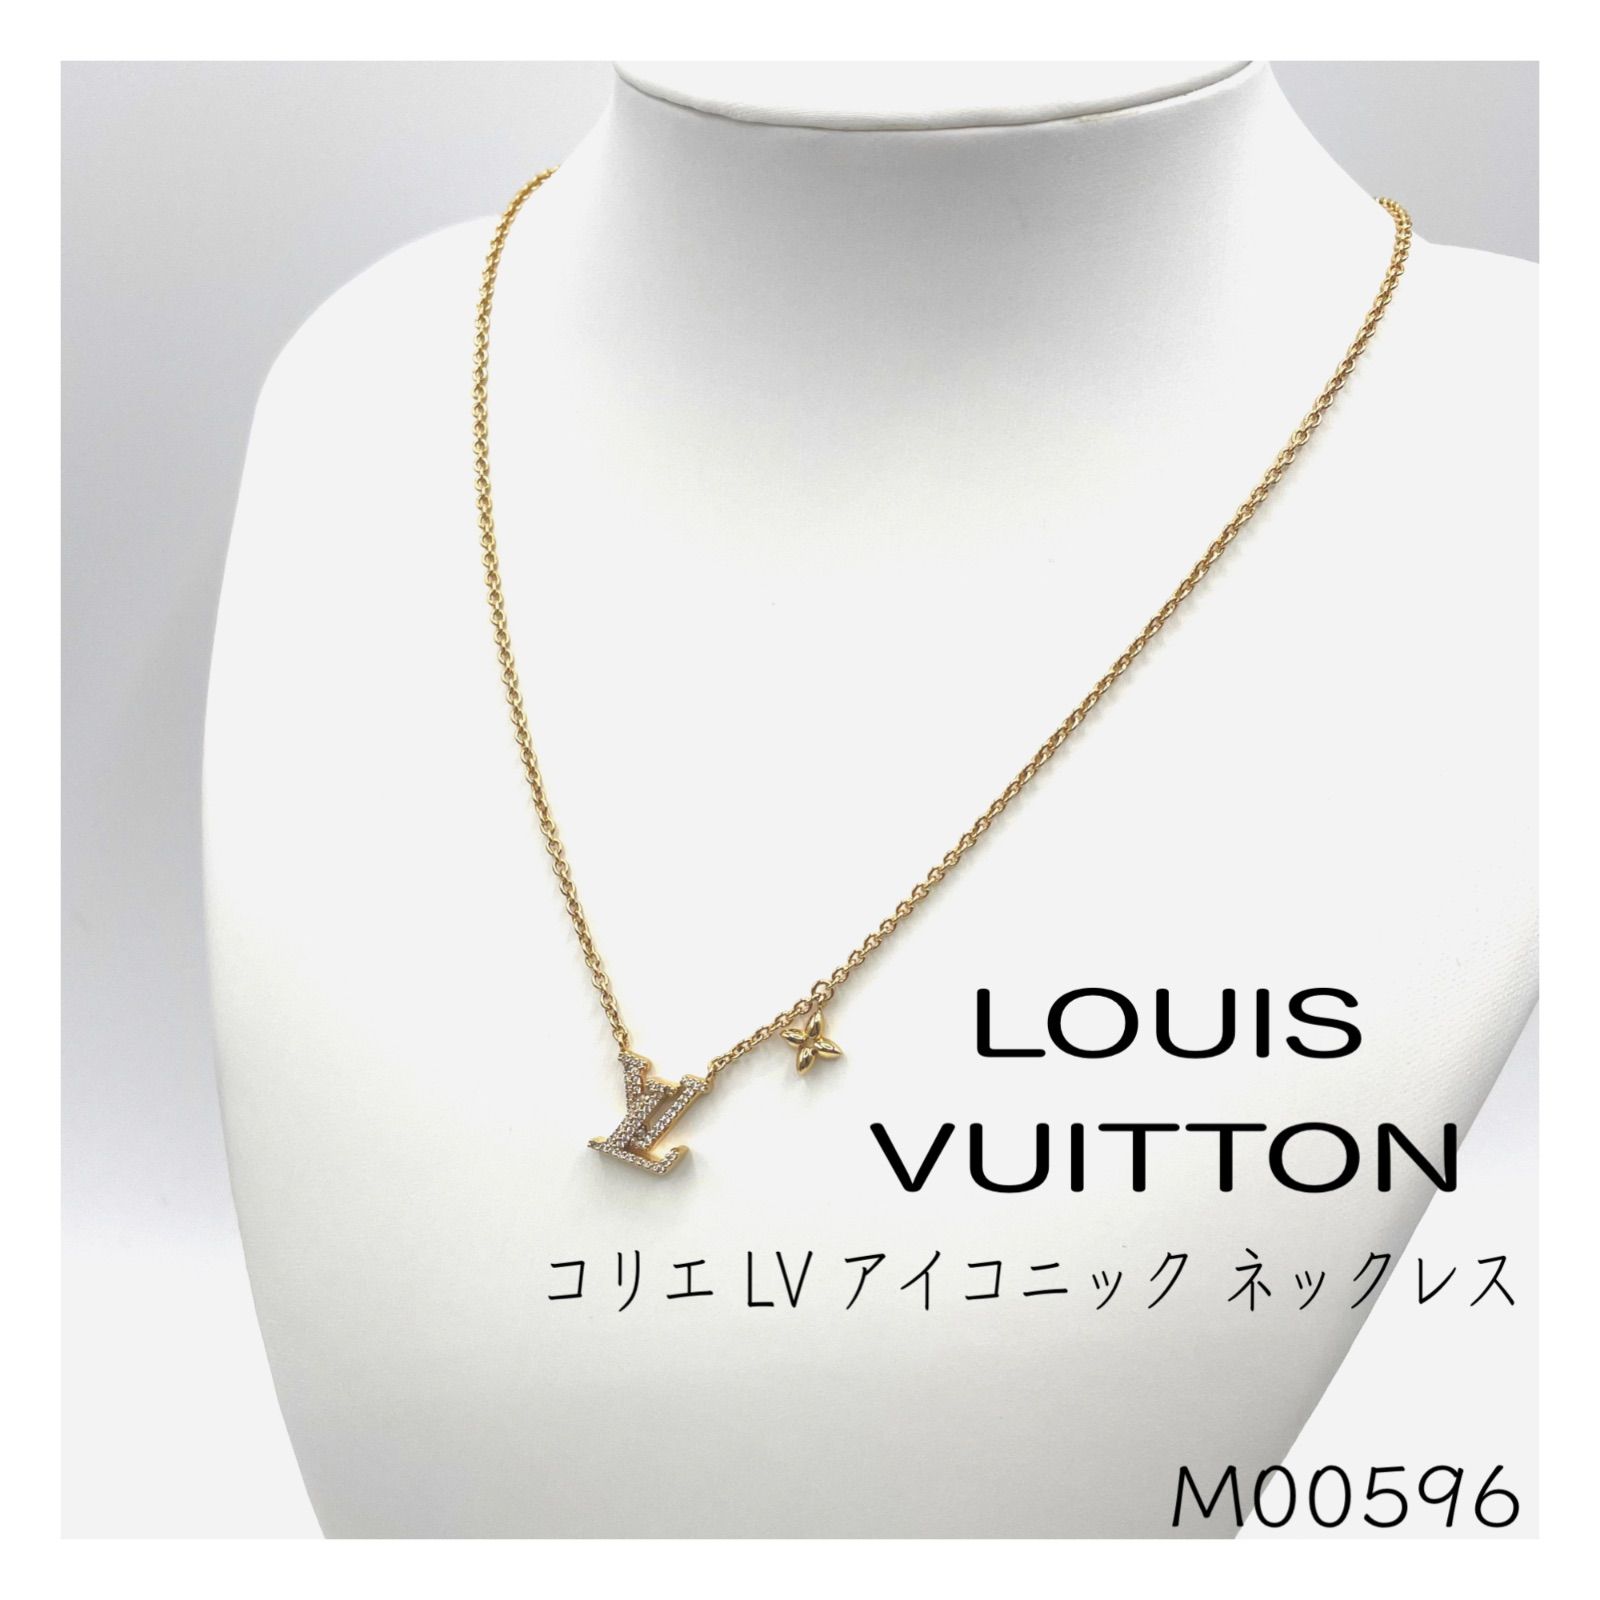 LOUIS VUITTON ルイヴィトン M00596 コリエLVアイコニック ネックレス TE4212 ストラス ゴールドカラー